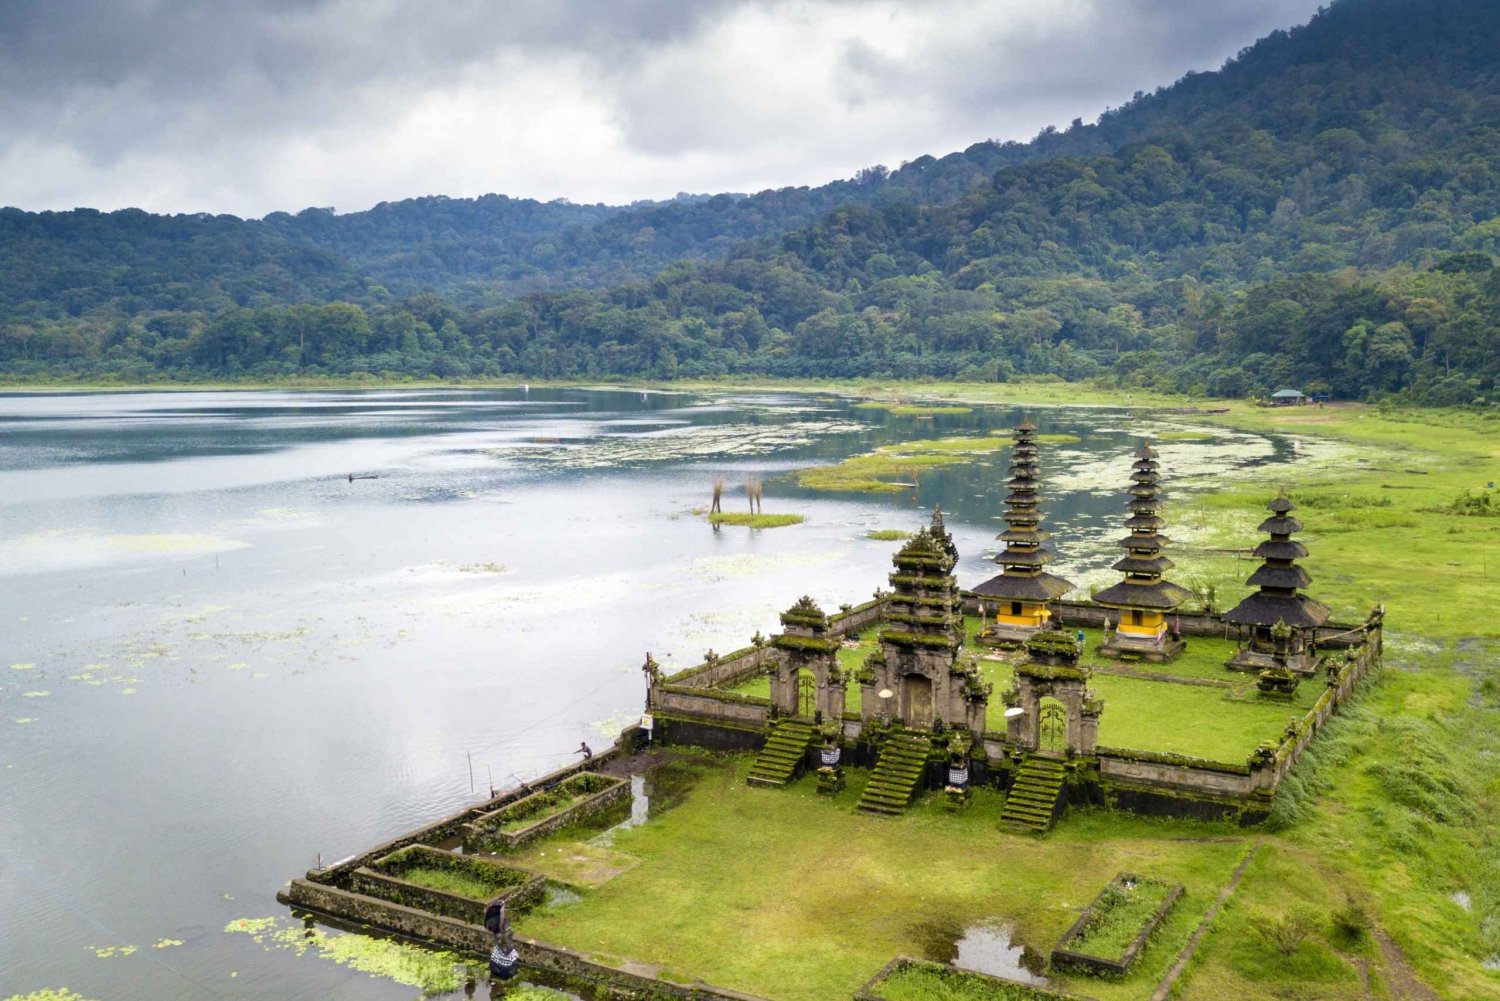 Bali: Munduk-vattenfallsvandring, tvillingsjöar och tempeltur